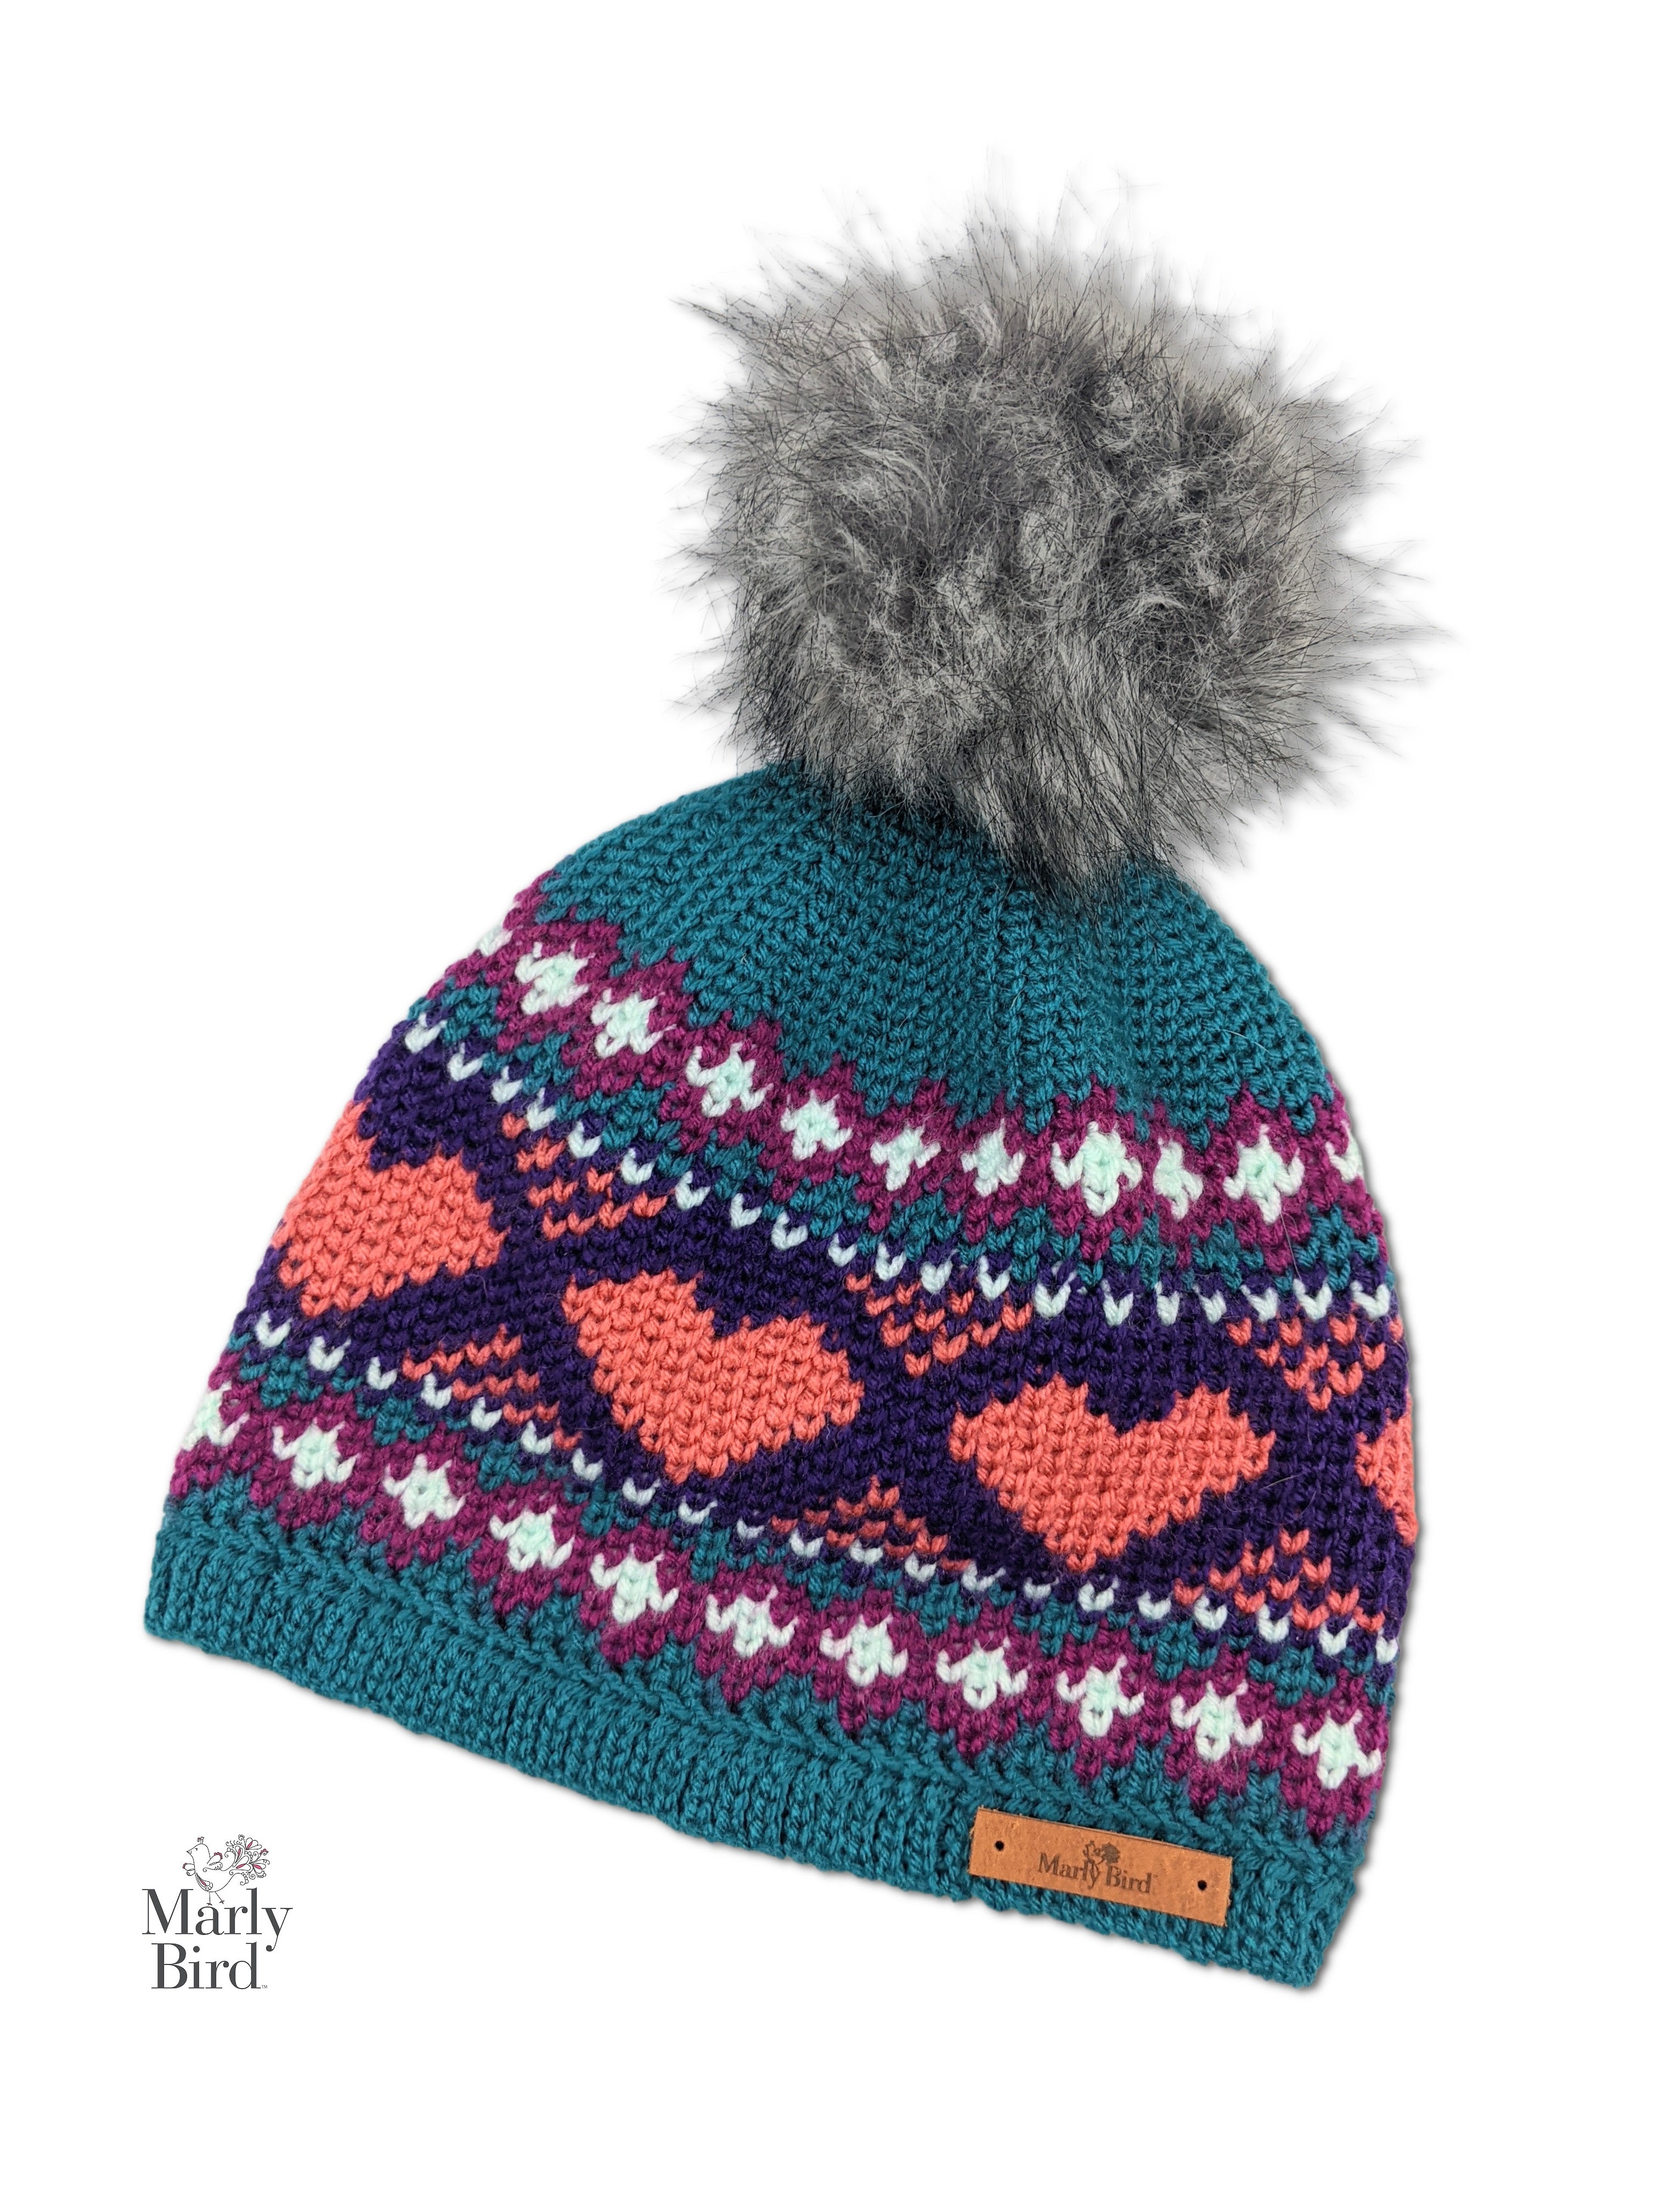 Cinnamon Hearts Crochet Hat Pattern